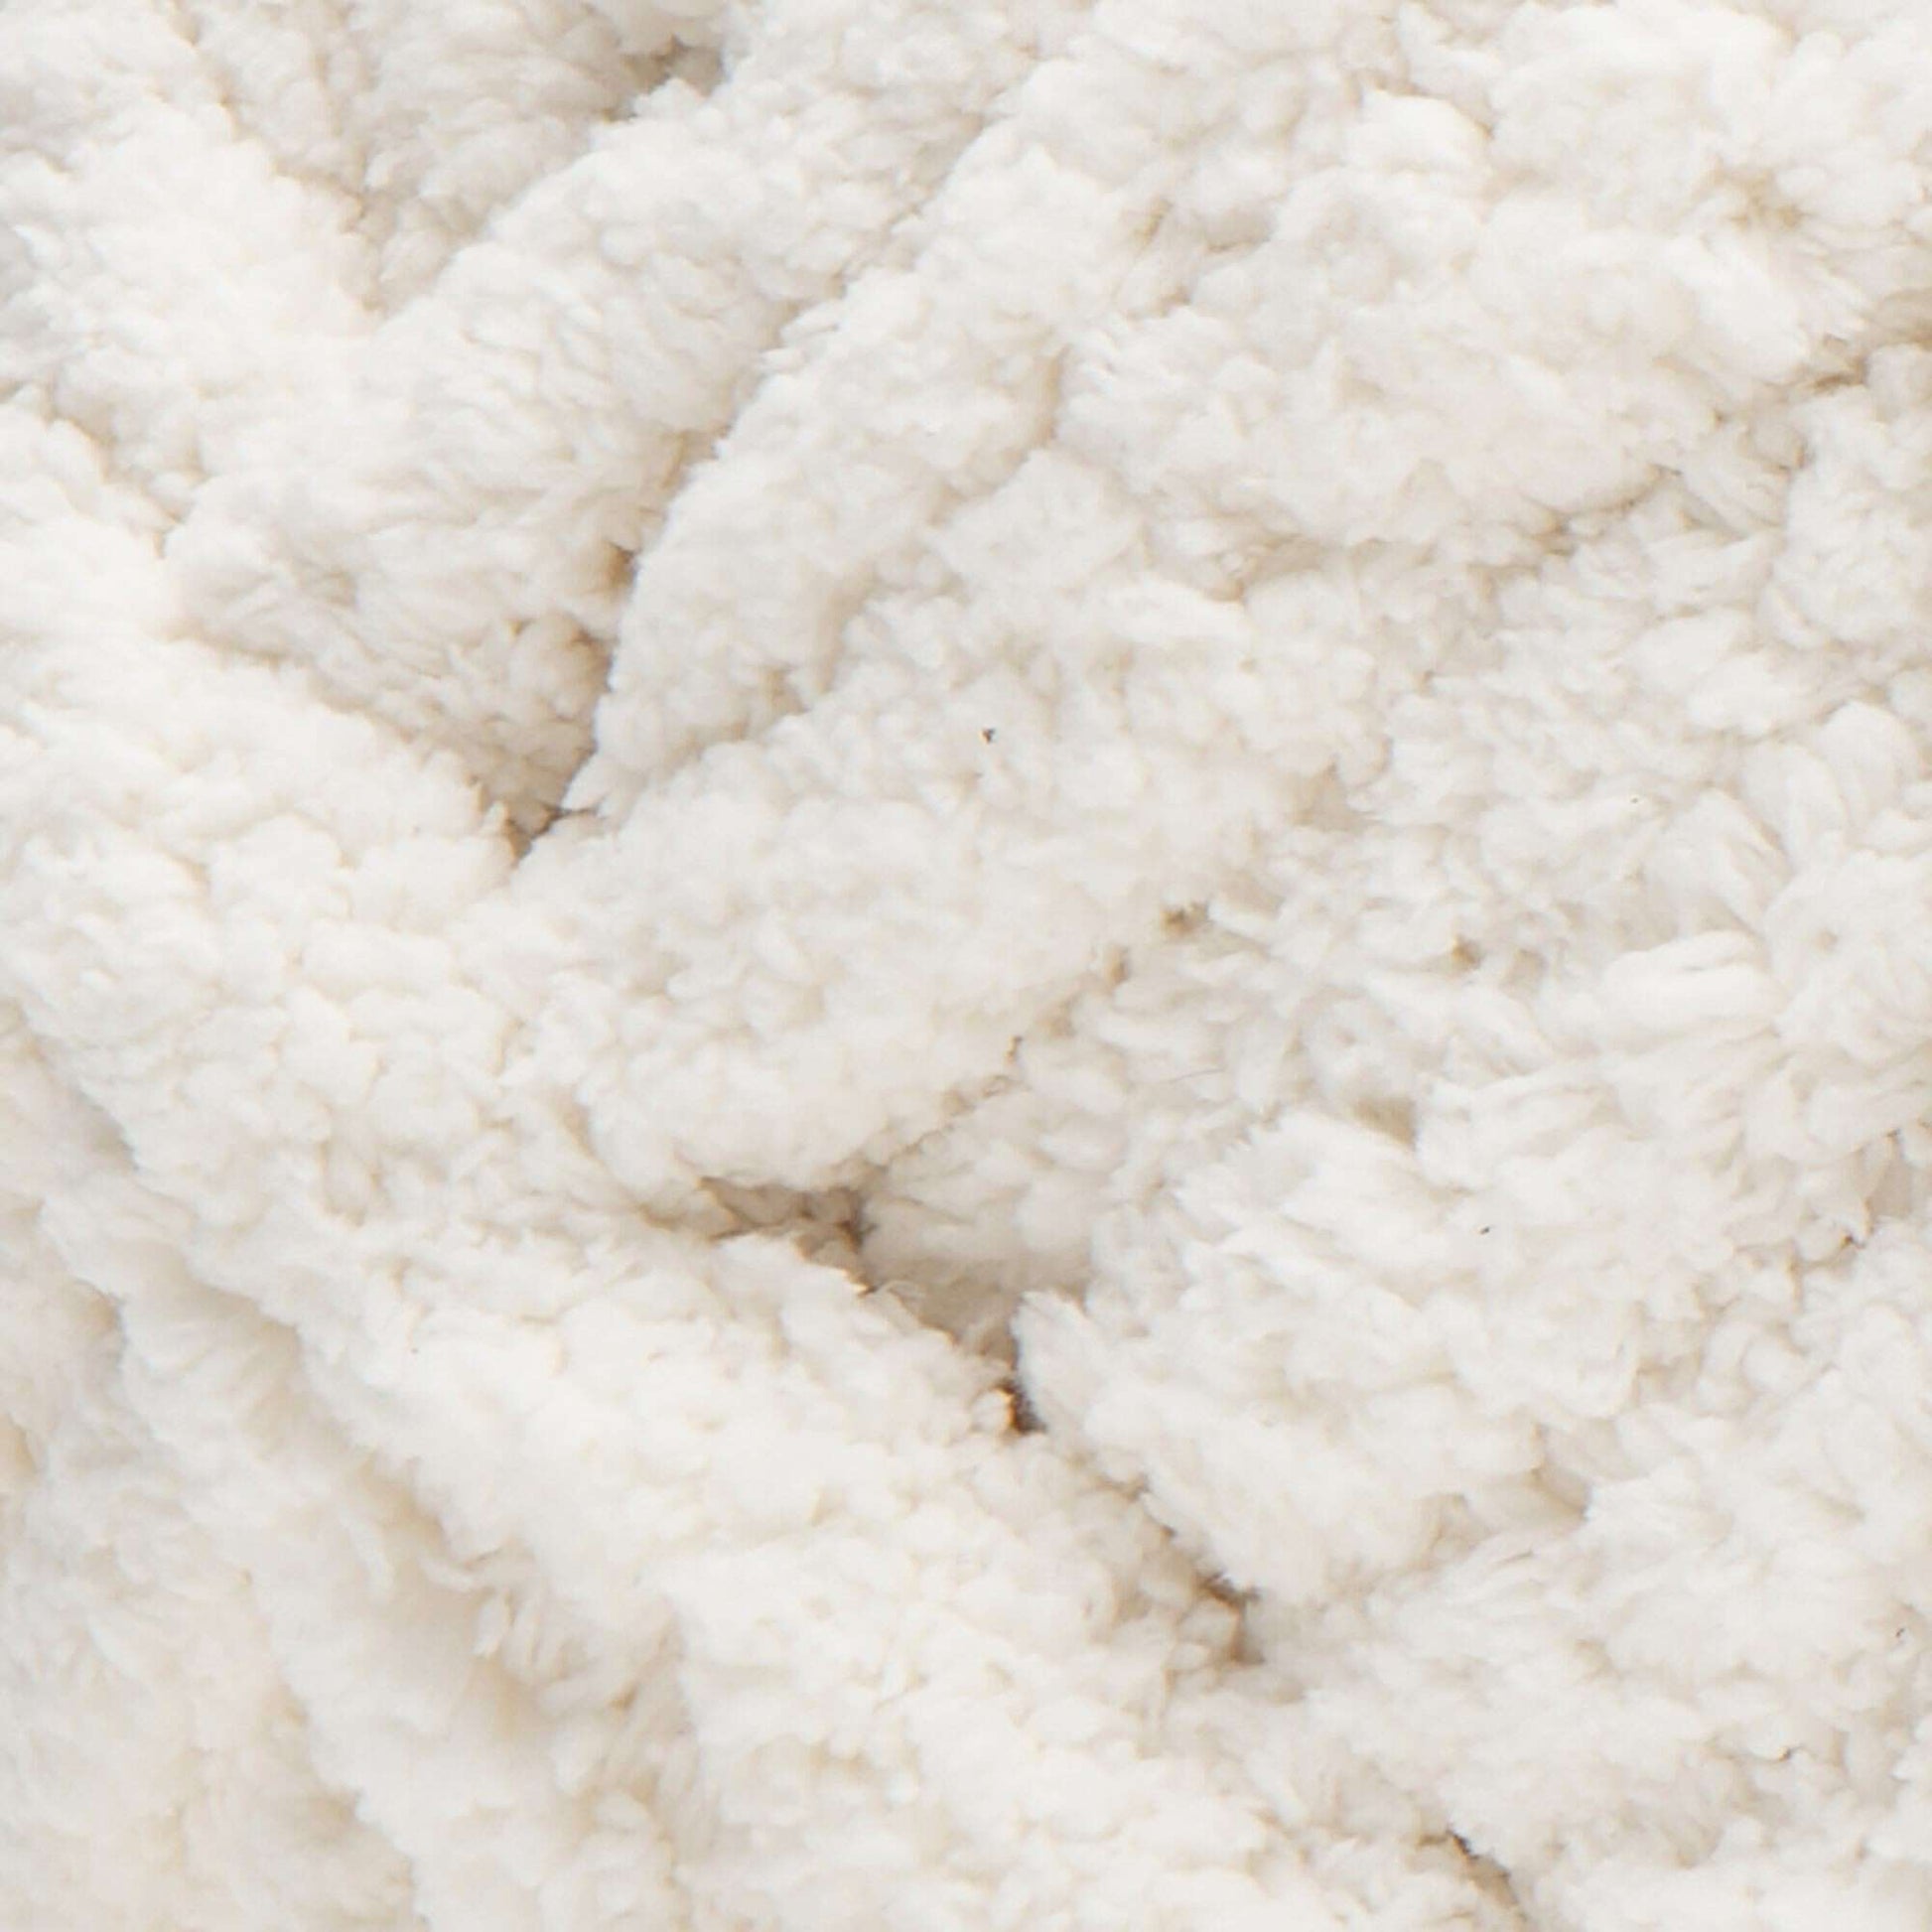 Bernat Blanket Extra Thick Yarn (600g/21.2oz) Vintage White